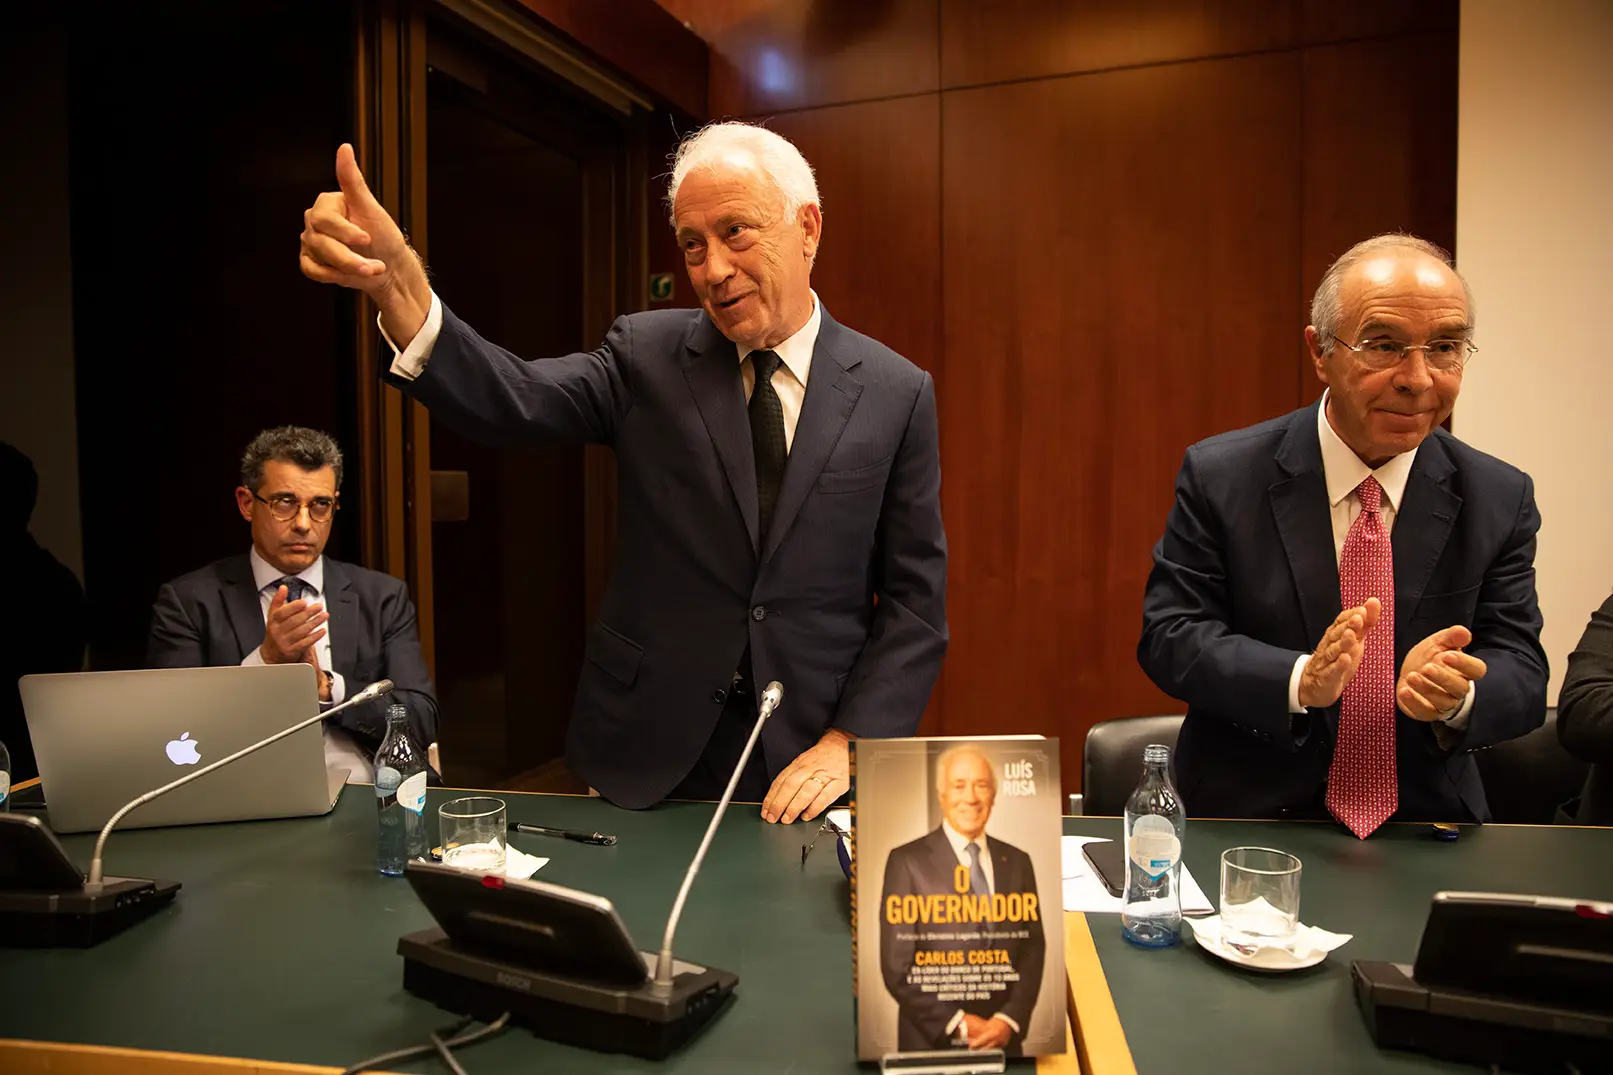 Luís Rosa, Carlos Costa e Luís Marques Mendes: o autor do livro, o autor das memórias, o autor da sugestão de que o Ministério Público abra uma investigação